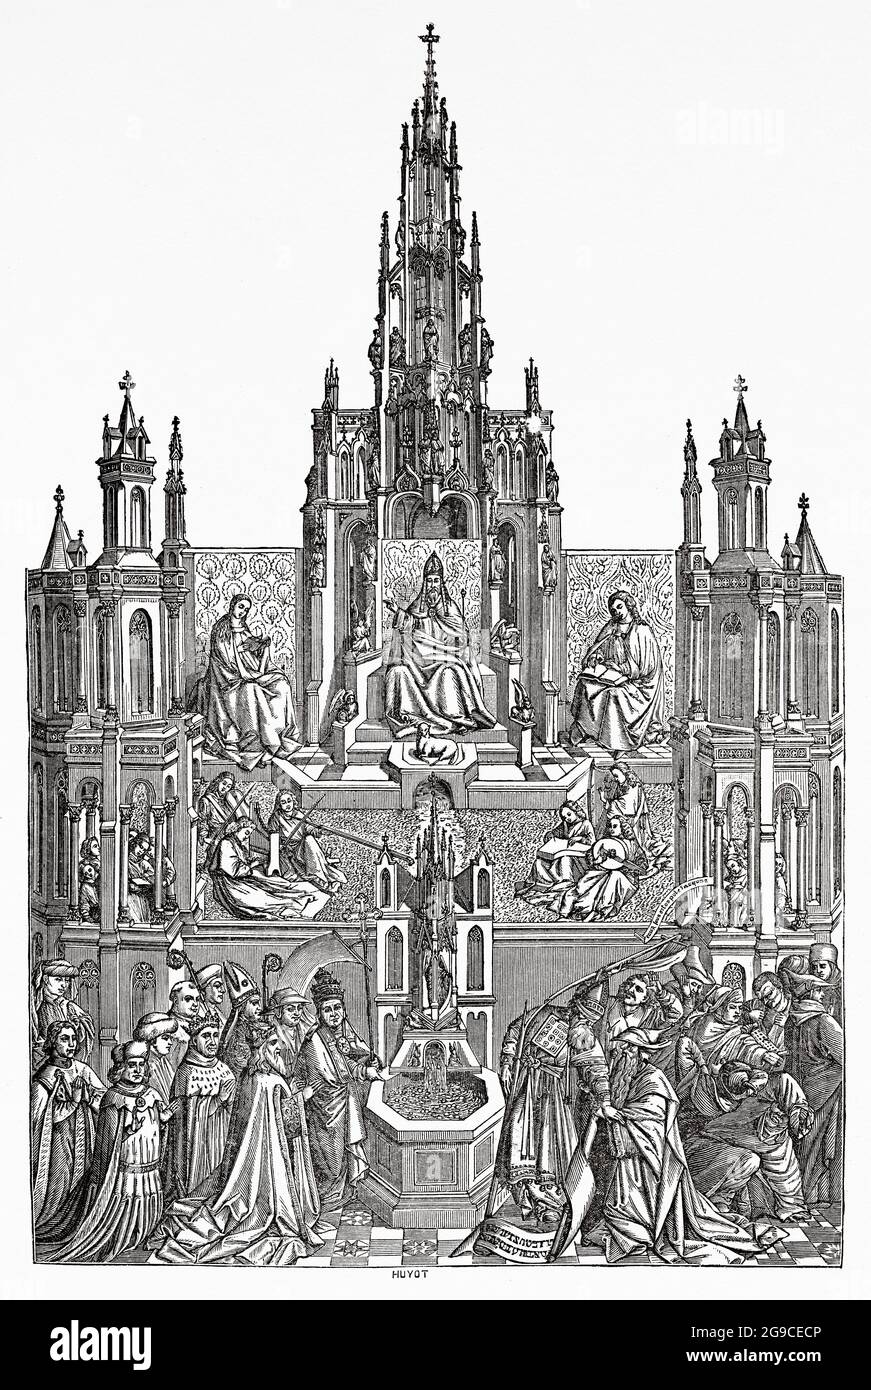 La Fuente De La Vida. Der Brunnen der Gnade, Gemälde von Jan van Eyck (1390-1441) war ein flämischer Maler. Alte Illustration von Jesus Christus aus dem 19. Jahrhundert von Veuillot 1881 Stockfoto